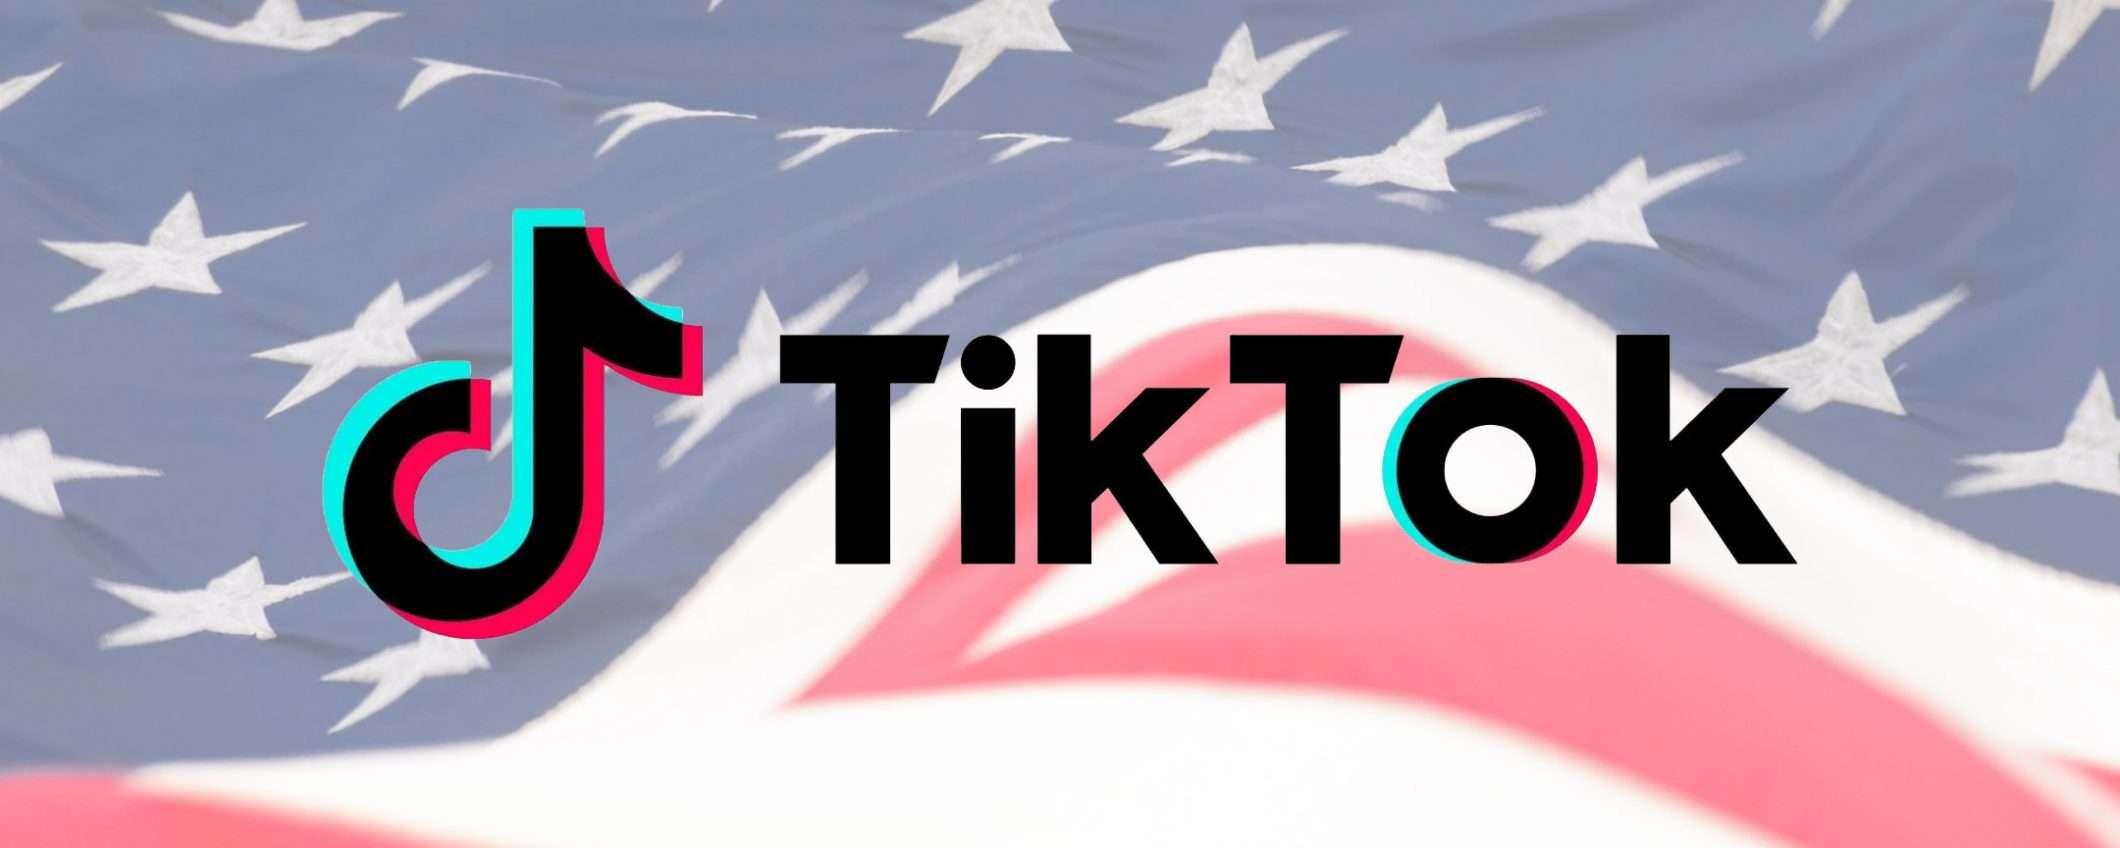 Microsoft-TikTok: la trattativa è ufficiale